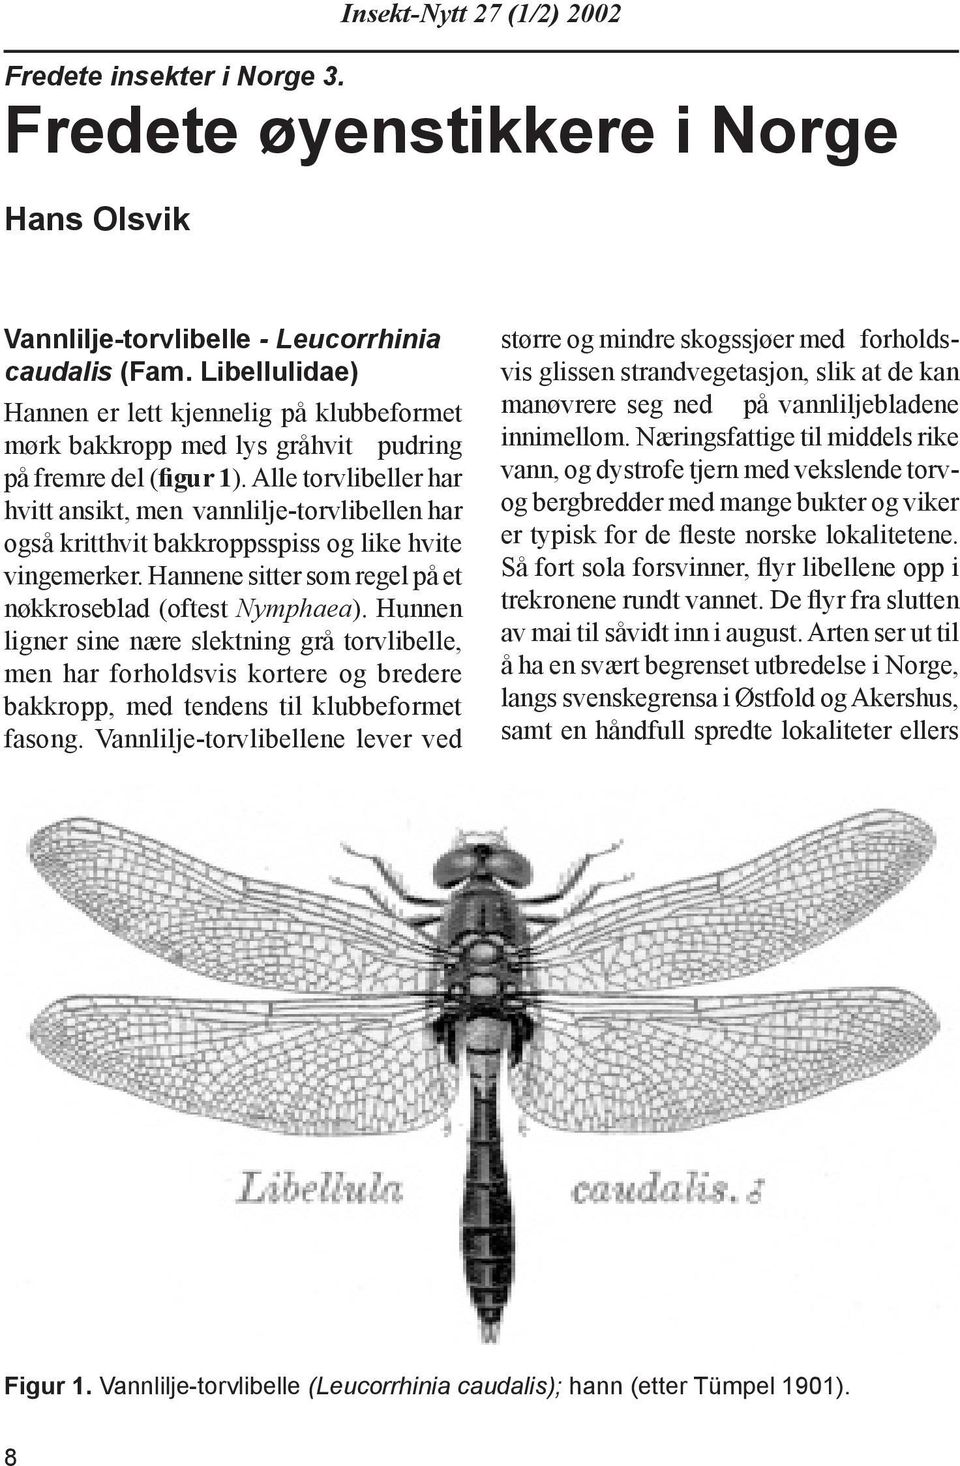 Alle torvlibeller har hvitt ansikt, men vannlilje-torvlibellen har også kritthvit bakkroppsspiss og like hvite vinge mer ker. Hannene sitter som regel på et nøkkroseblad (oftest Nymphaea).